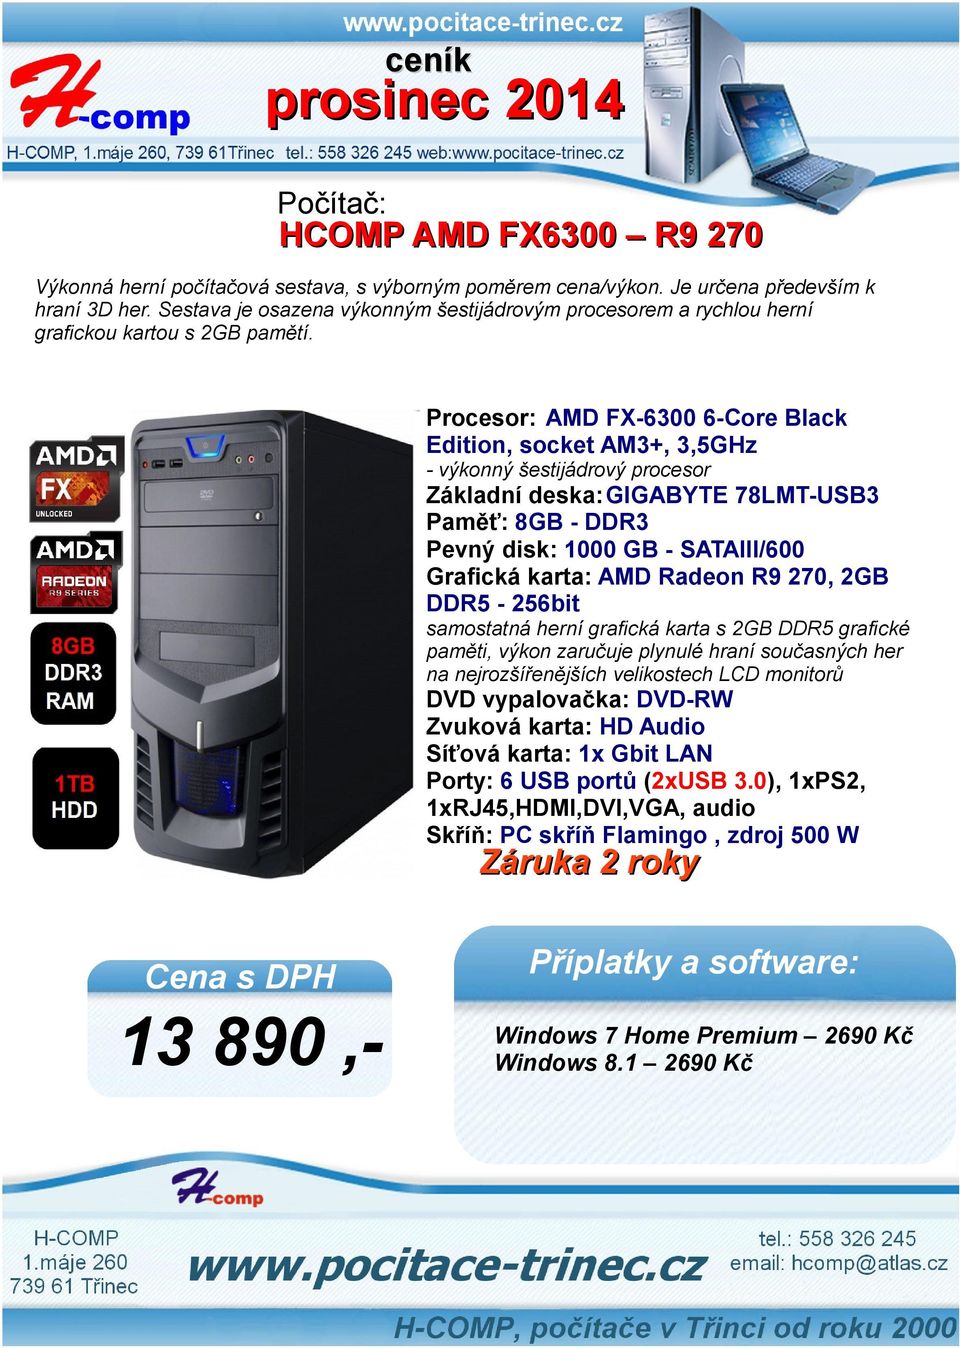 Procesor: AMD FX-6300 6-Core Black Edition, socket AM3+, 3,5GHz - výkonný šestijádrový procesor Základní deska:gigabyte 78LMT-USB3 Paměť: 8GB - DDR3 Pevný disk: 1000 GB